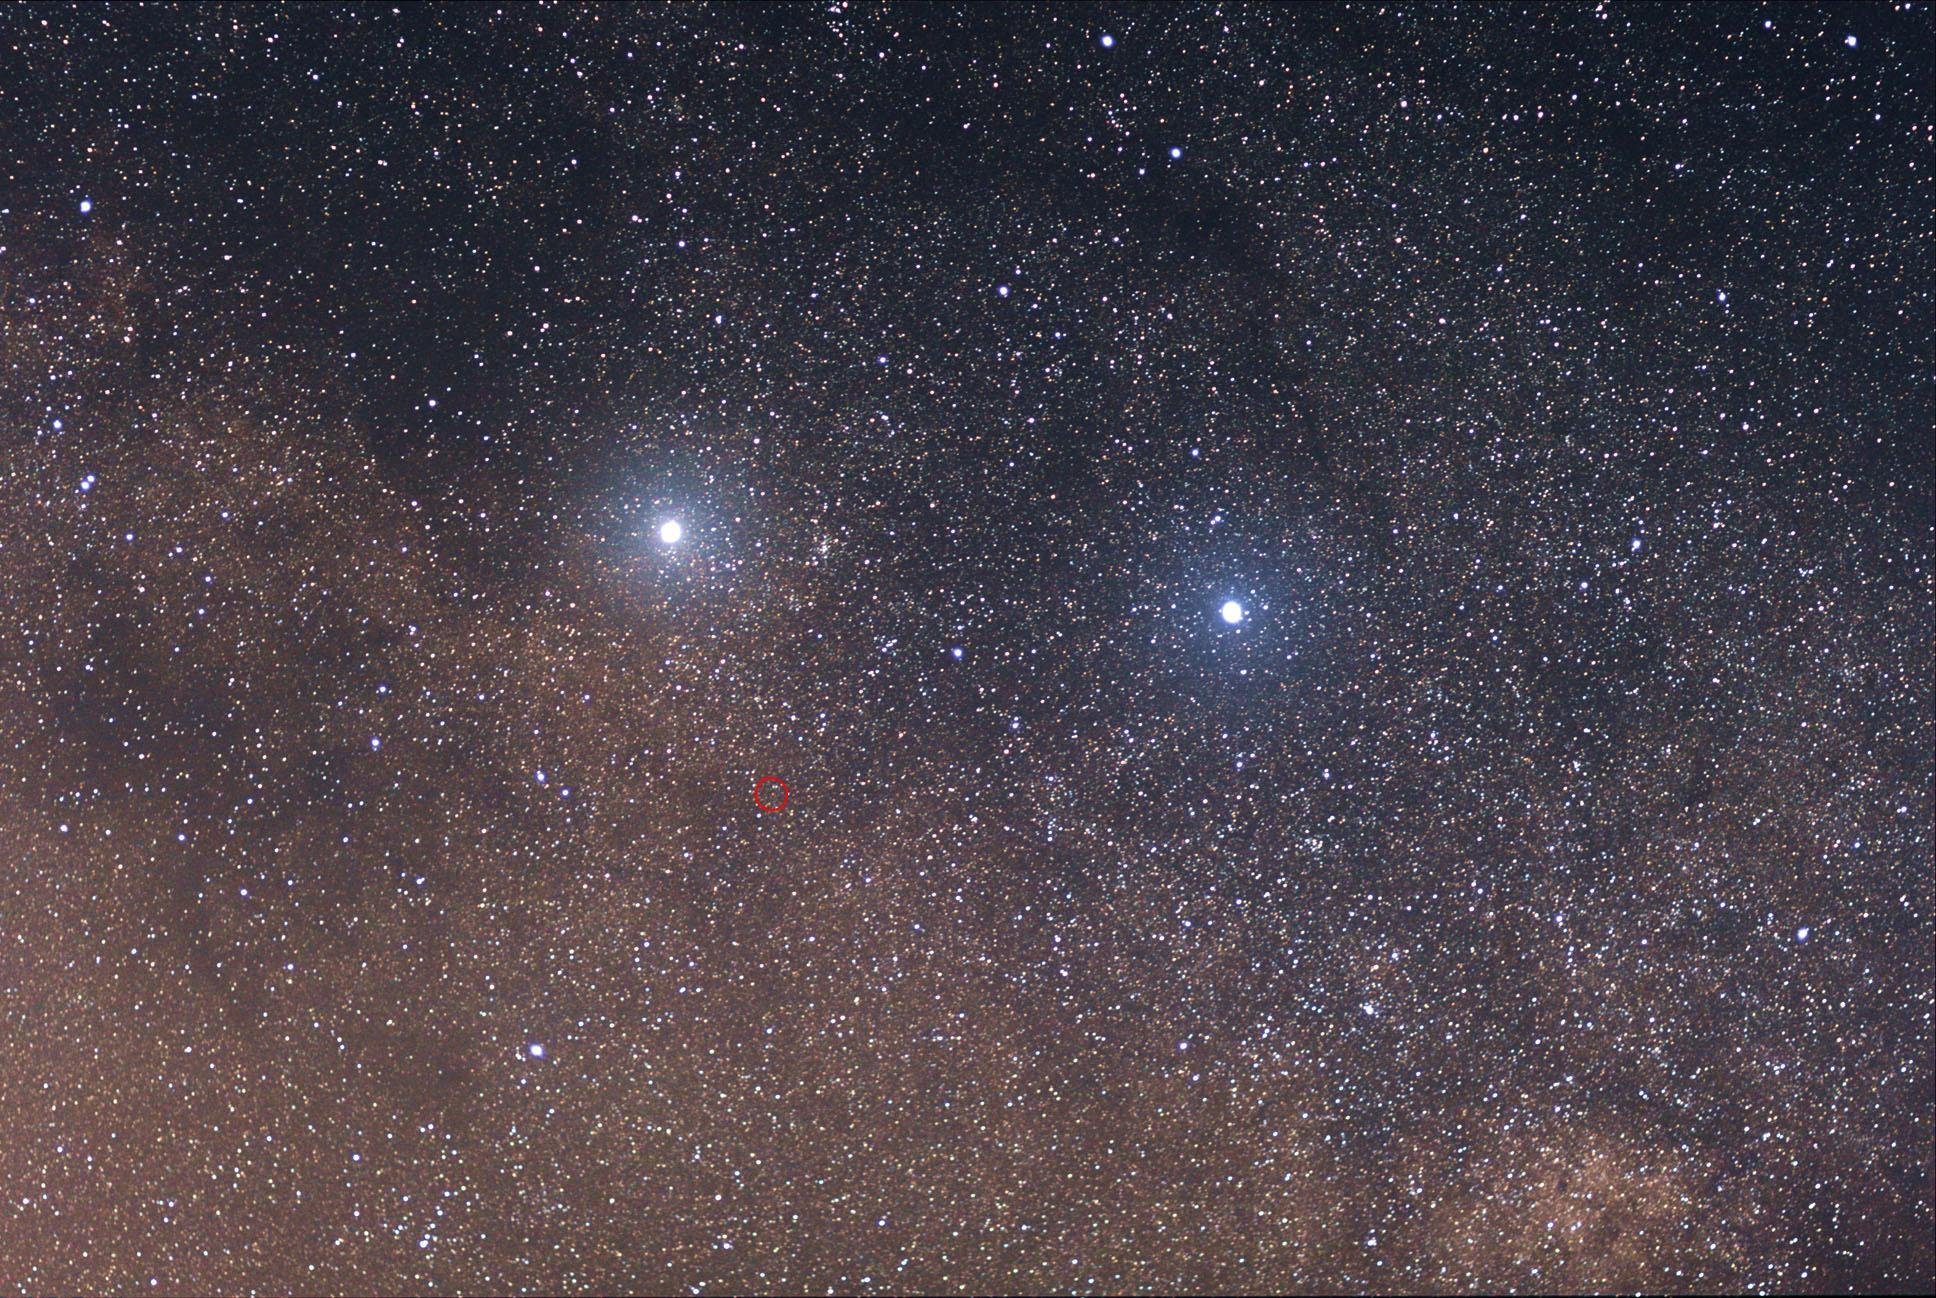 Sistema triplo Alpha Centauri. Podemos ver Alpha Centauri a (esquerda) e b (direita) claramente. A posição de Proxima Centauri está indicada pelo circulo vermelho. Por ser menor e menos brilhante, não é possível observá-la nessa imagem.